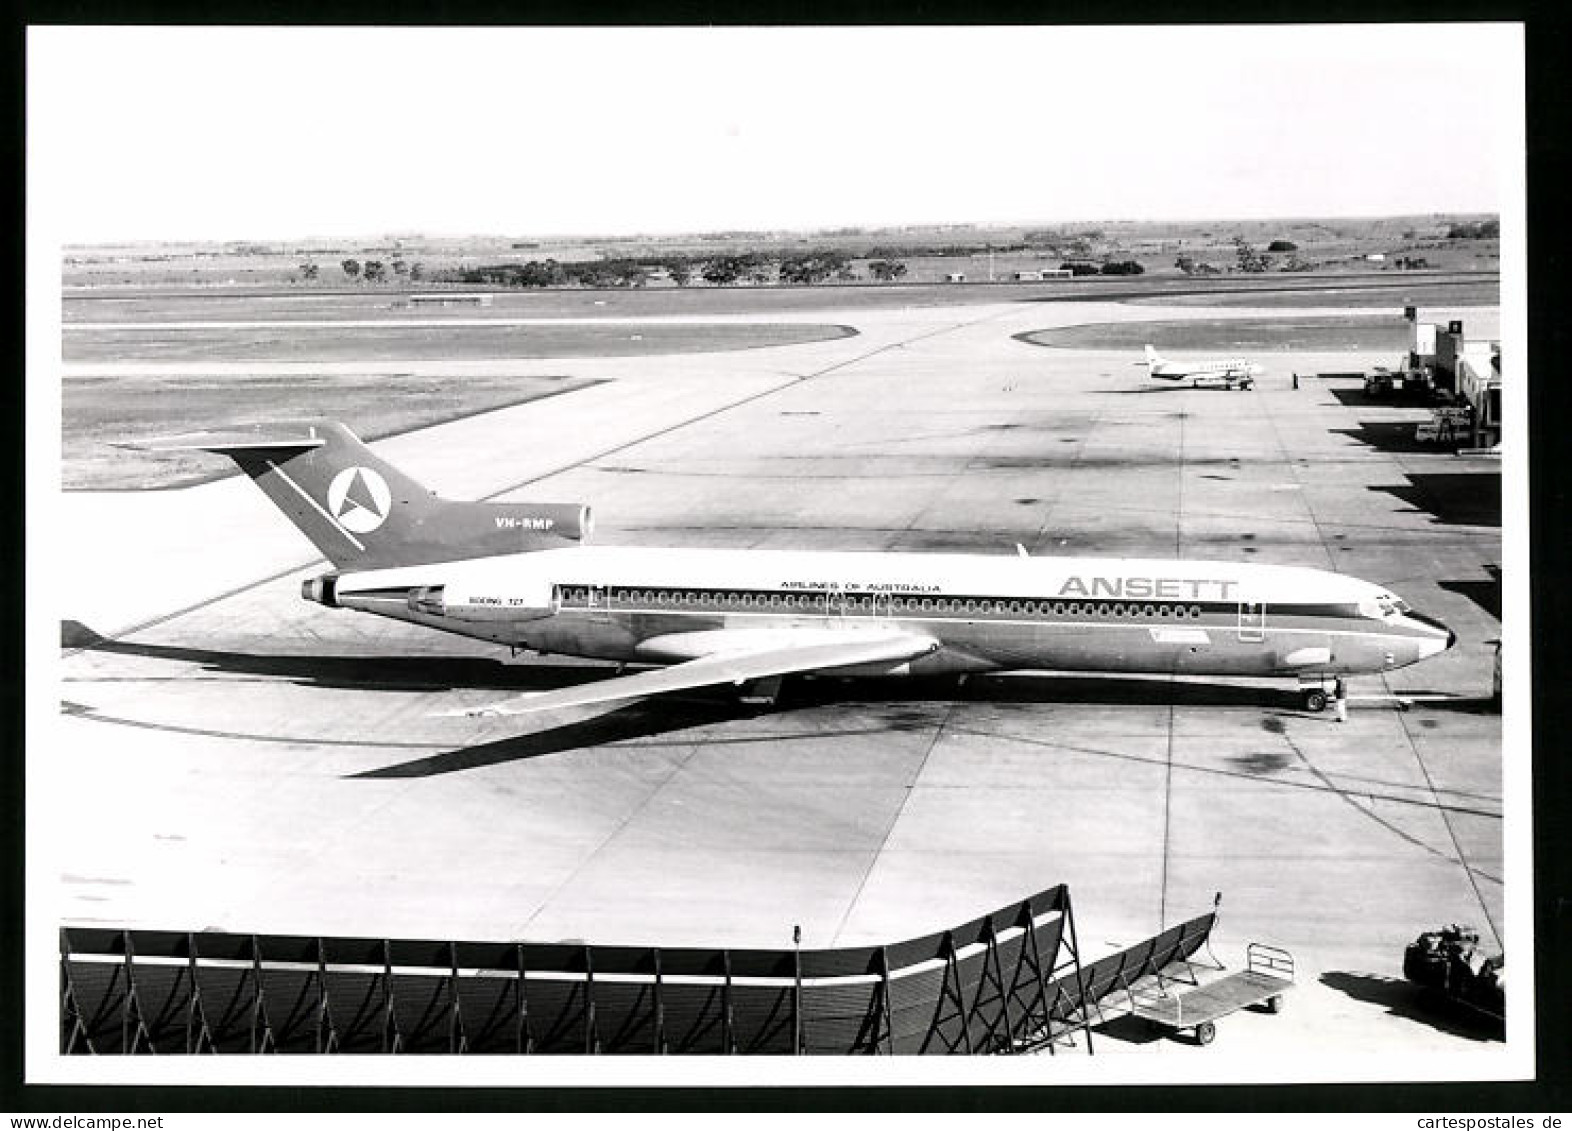 Fotografie Flugzeug Boeing 727, Passagierflugzeug Airlines Of Australia, Kennung VH-RMP  - Aviation